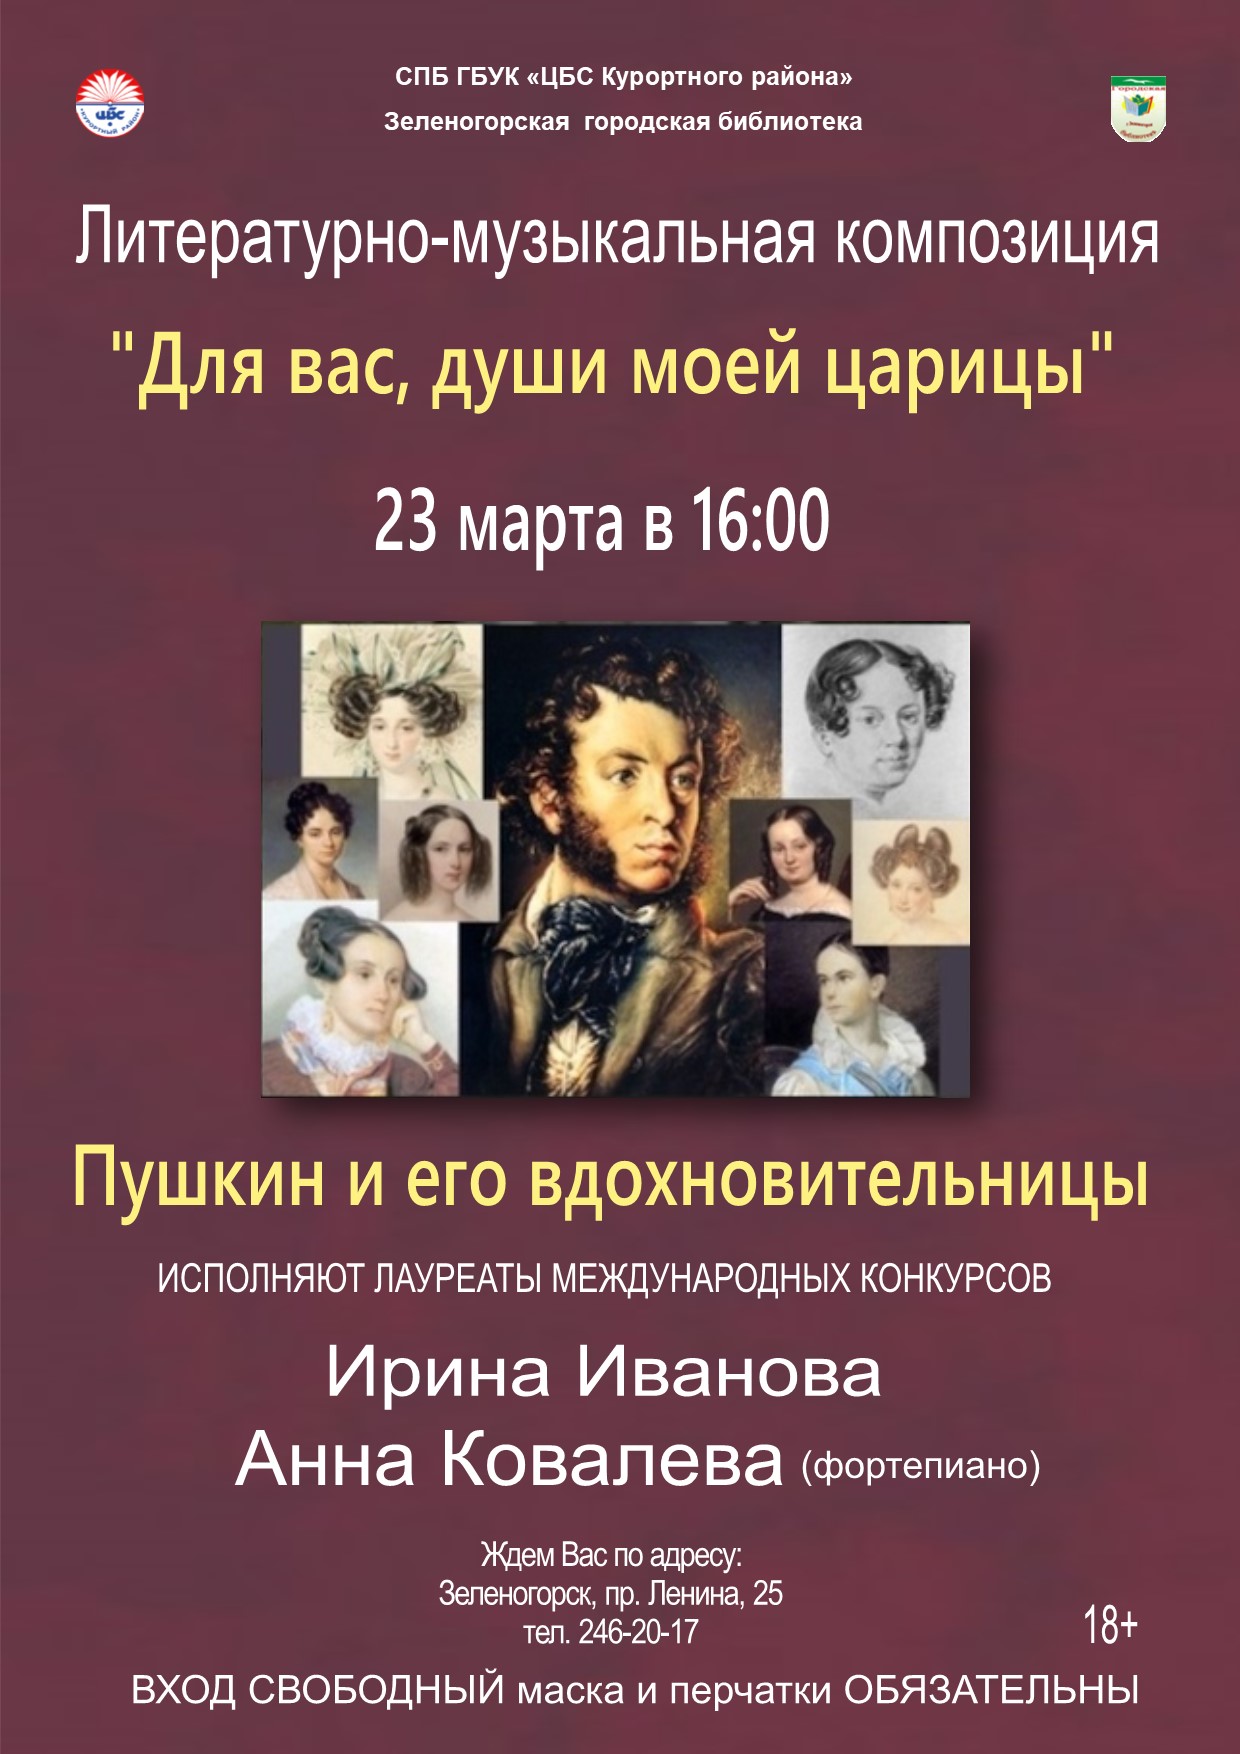 Литературно-музыкальная композия "Для вас,души моей царицы" 23 марта в 16:00